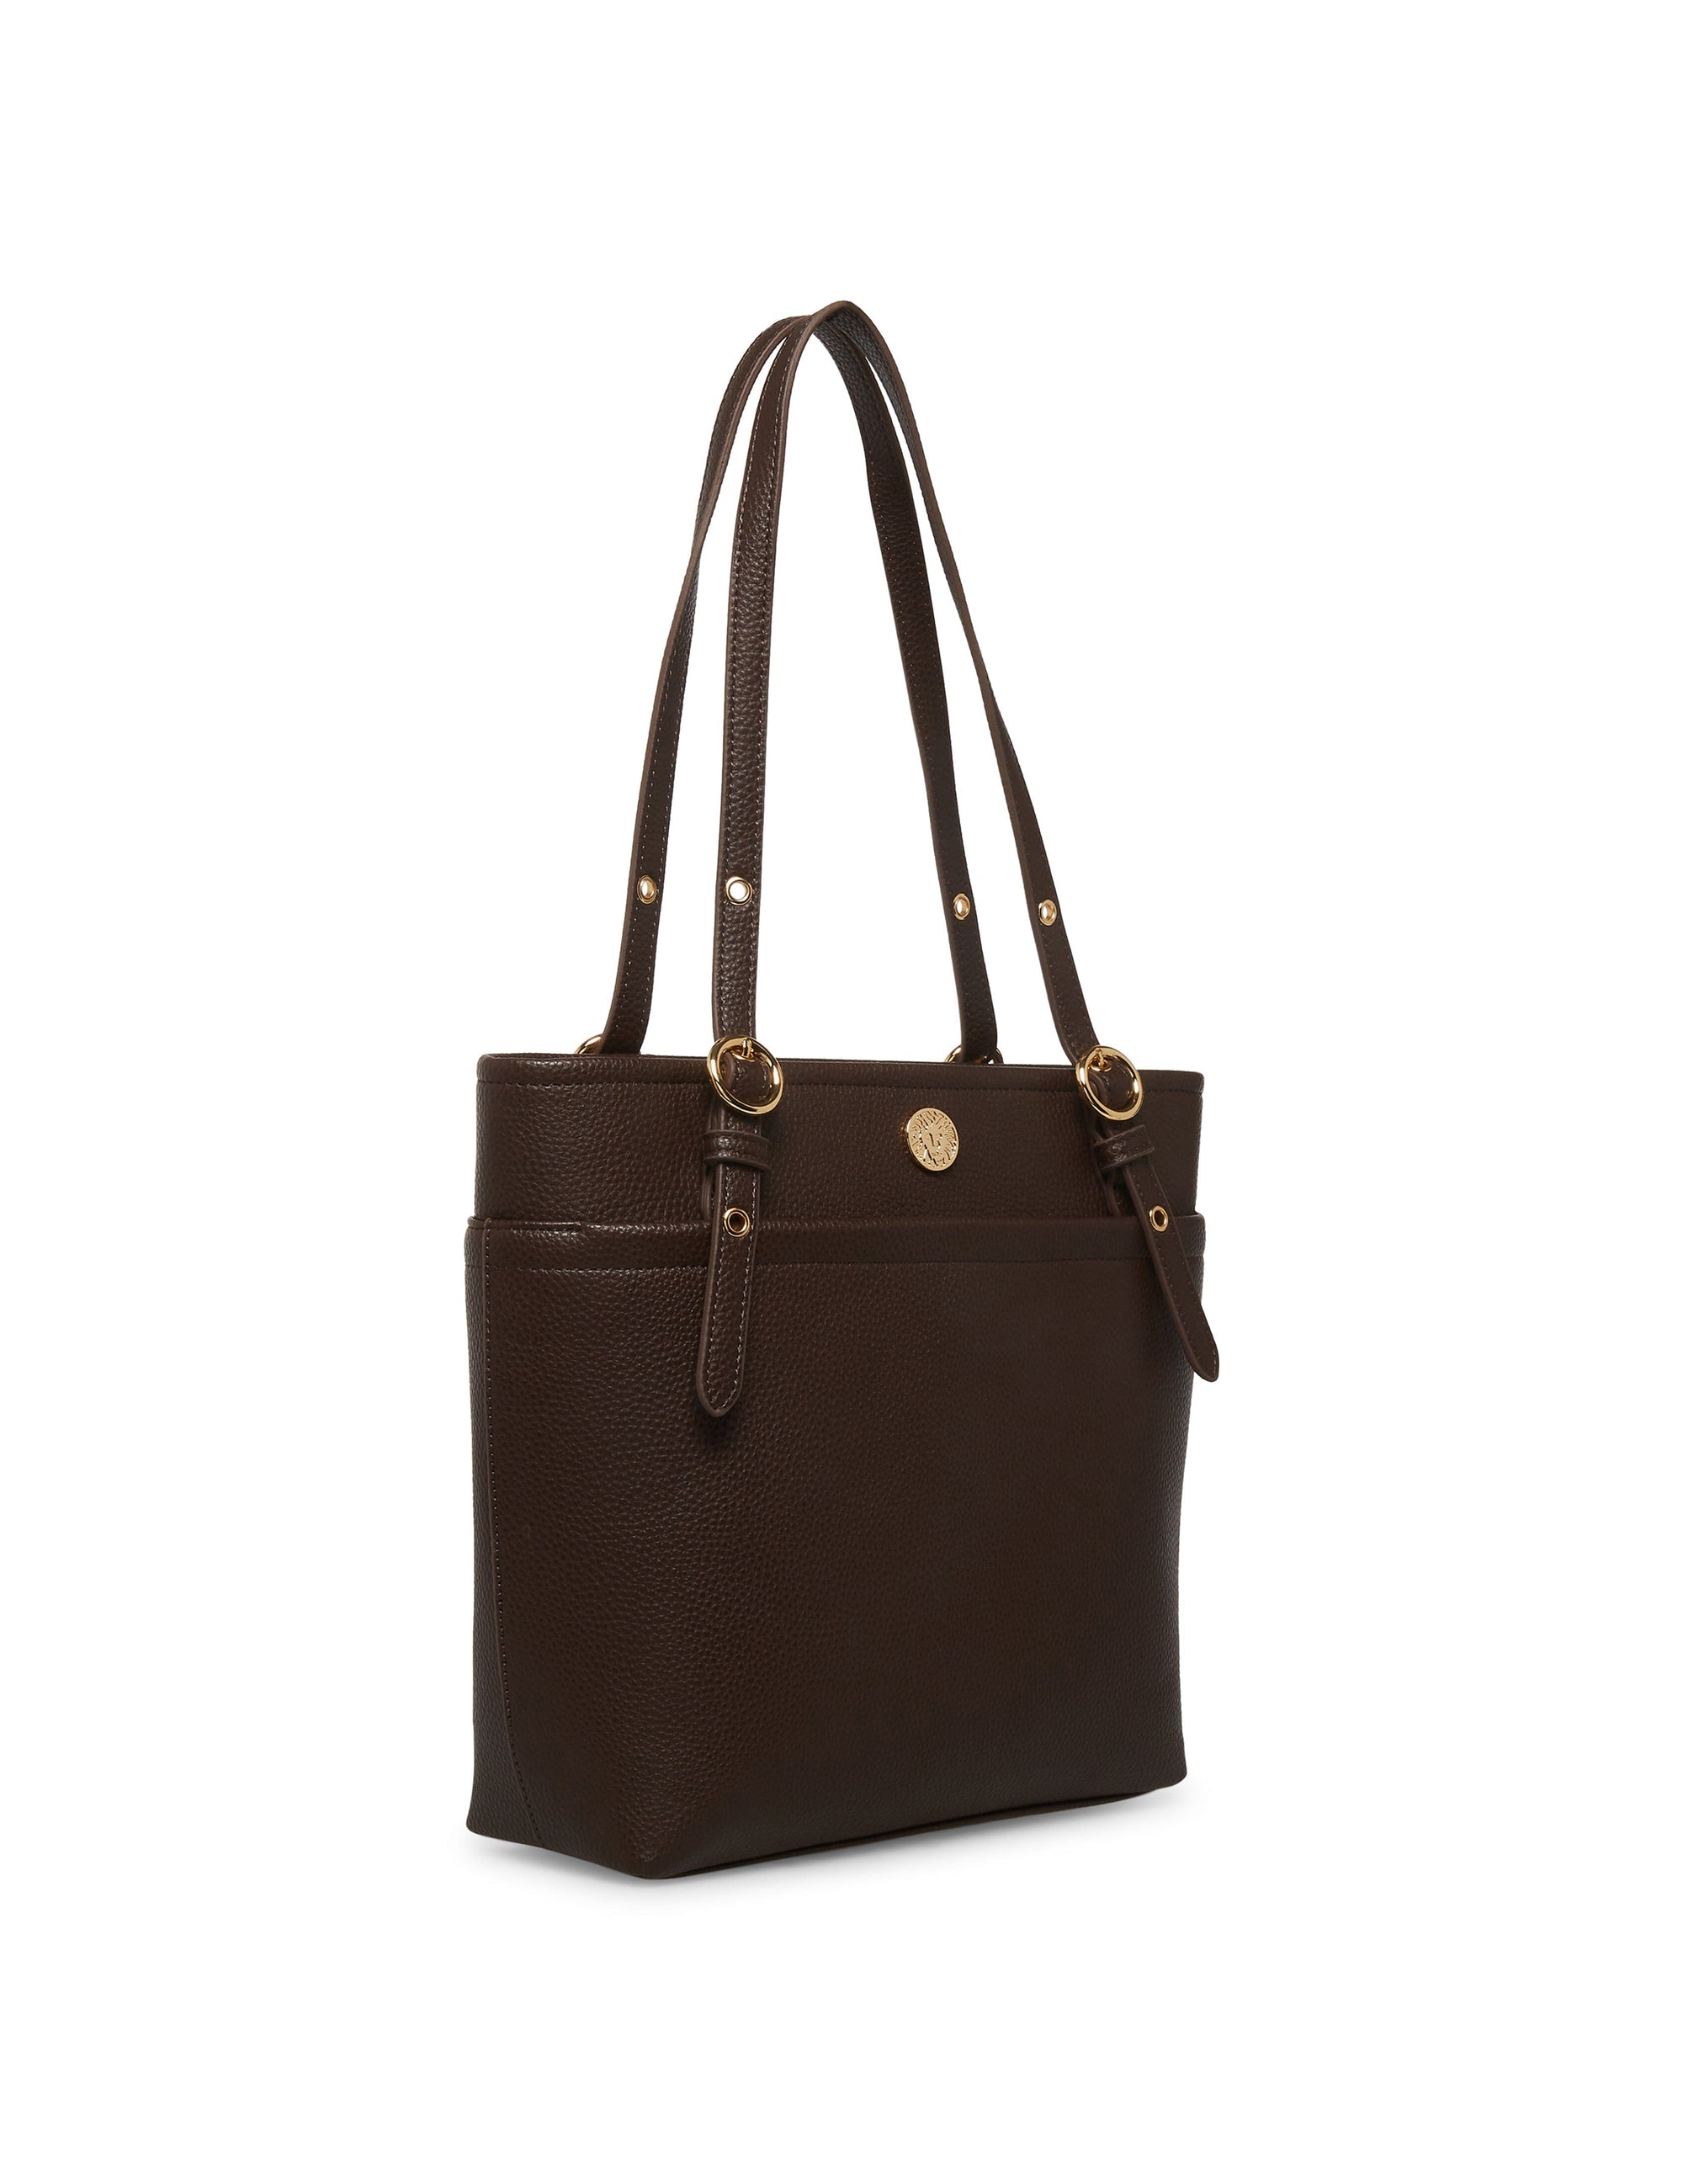 Anne Klein Handbag Purse GREY EXCELLENT CONDITION 10×15 | eBay